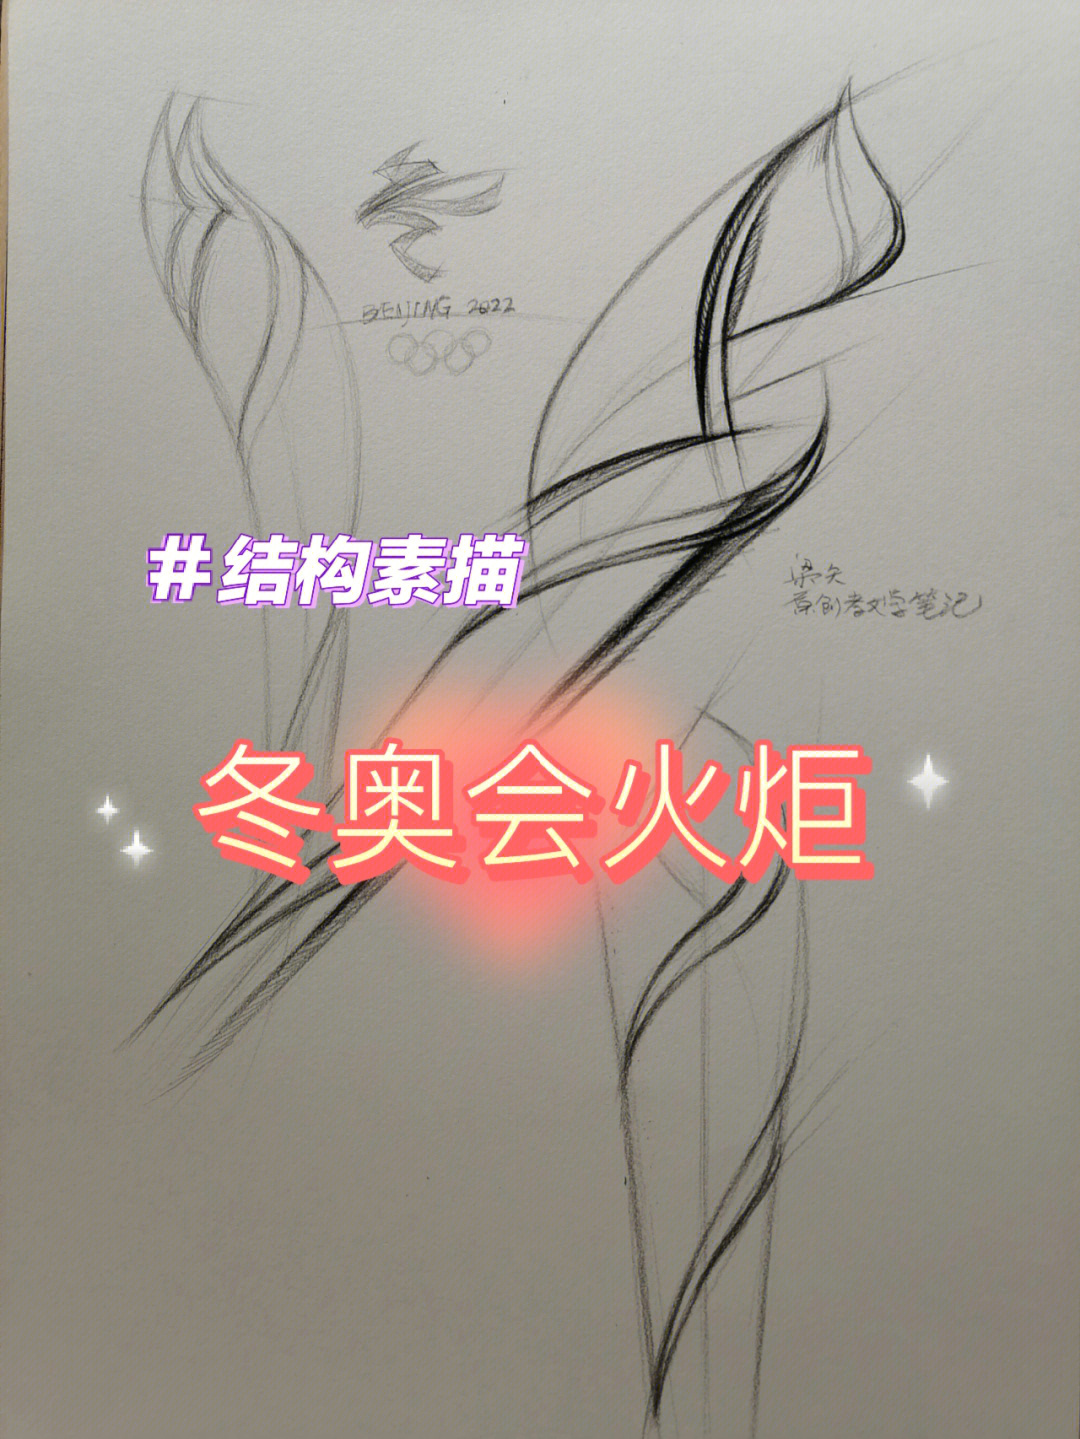 北京冬奥火炬手绘图片